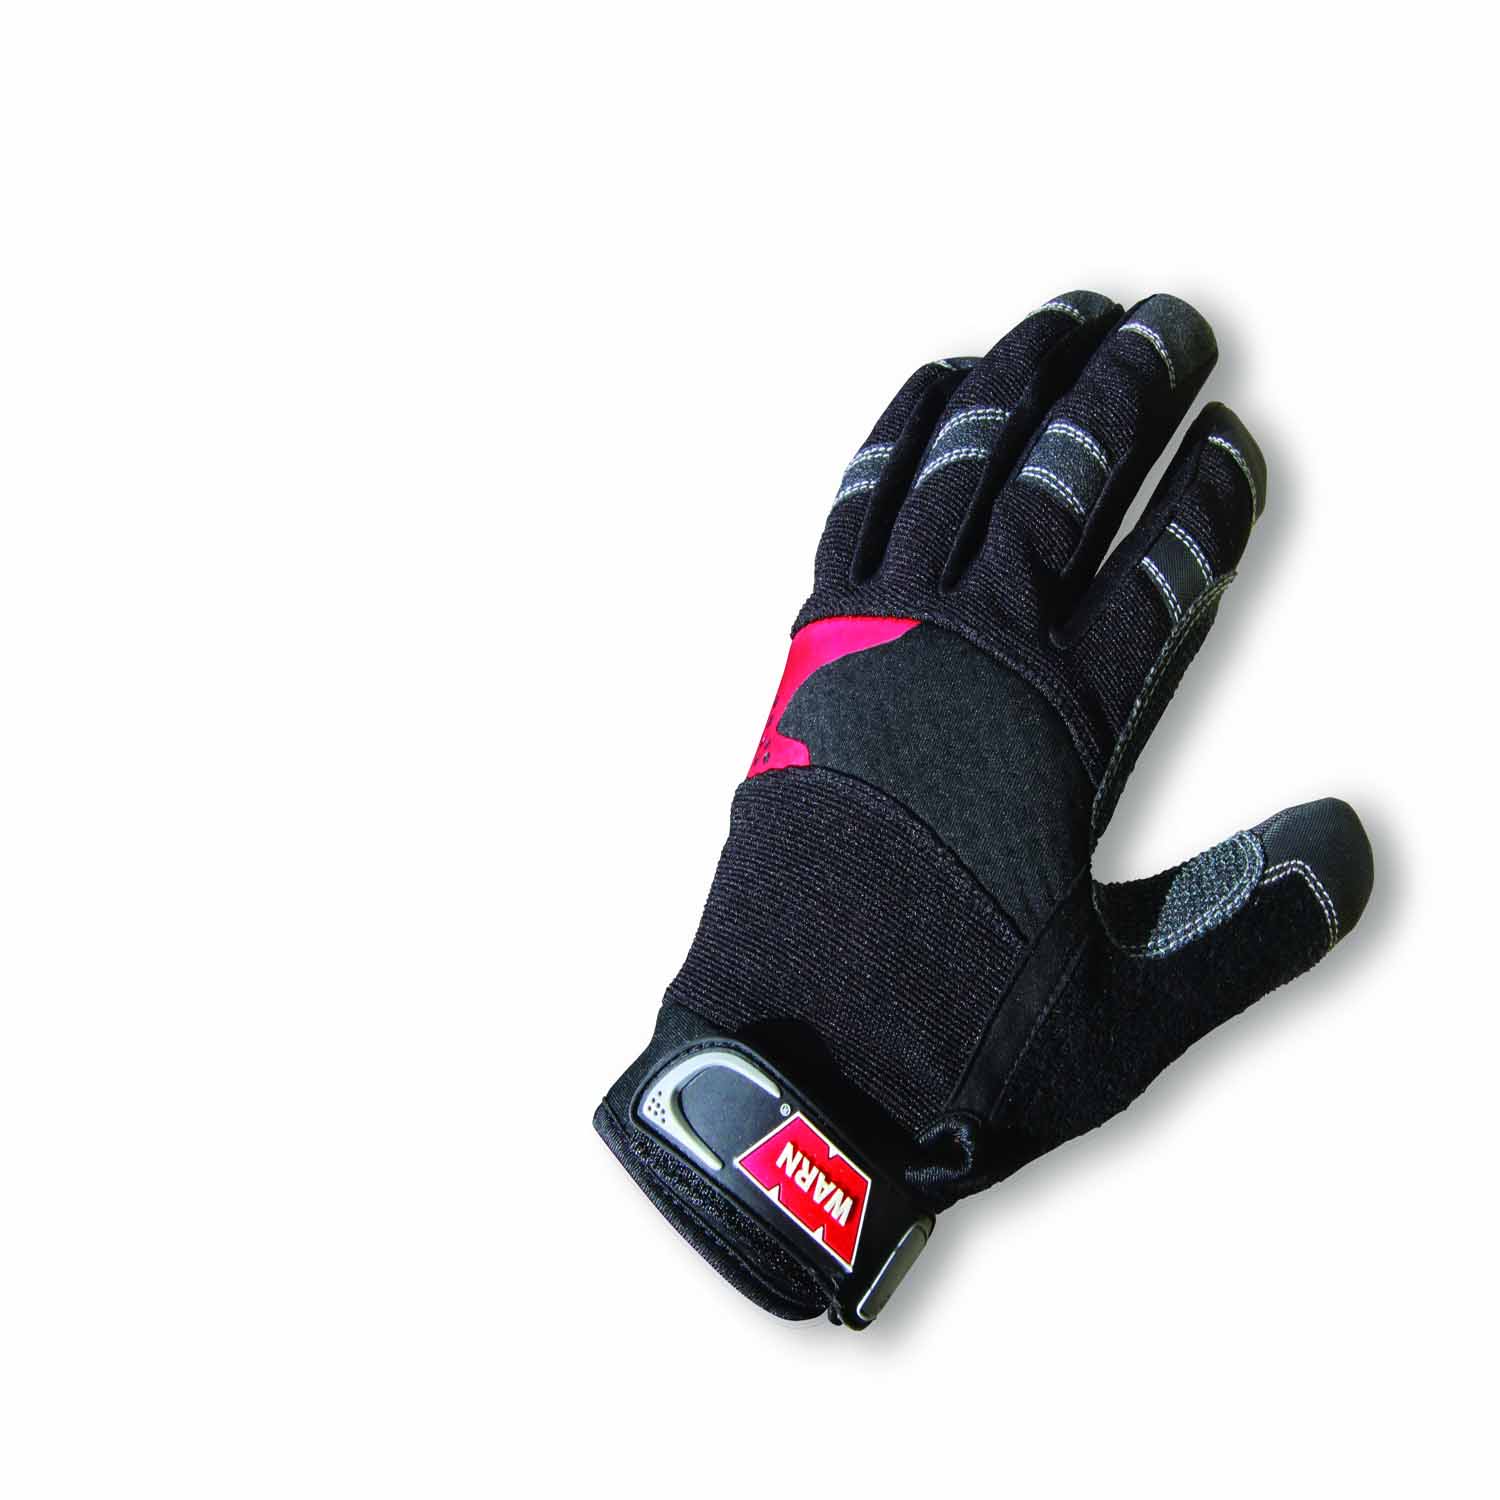 Warn 88895 Work Gloves